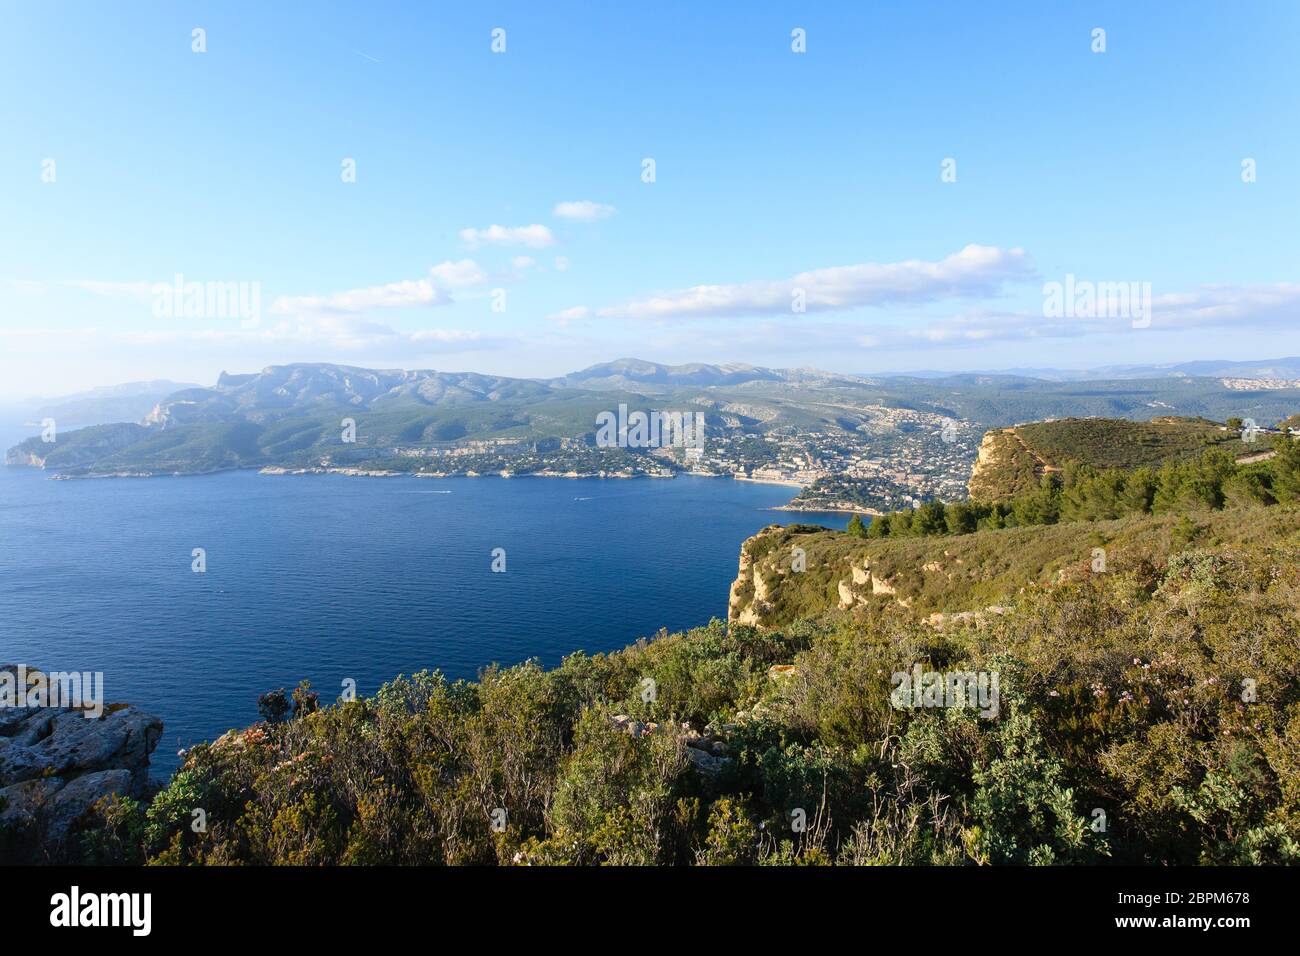 Cassis-Blick vom Cape Canaille oben, Frankreich. Wunderschöne französische Landschaft. Stockfoto